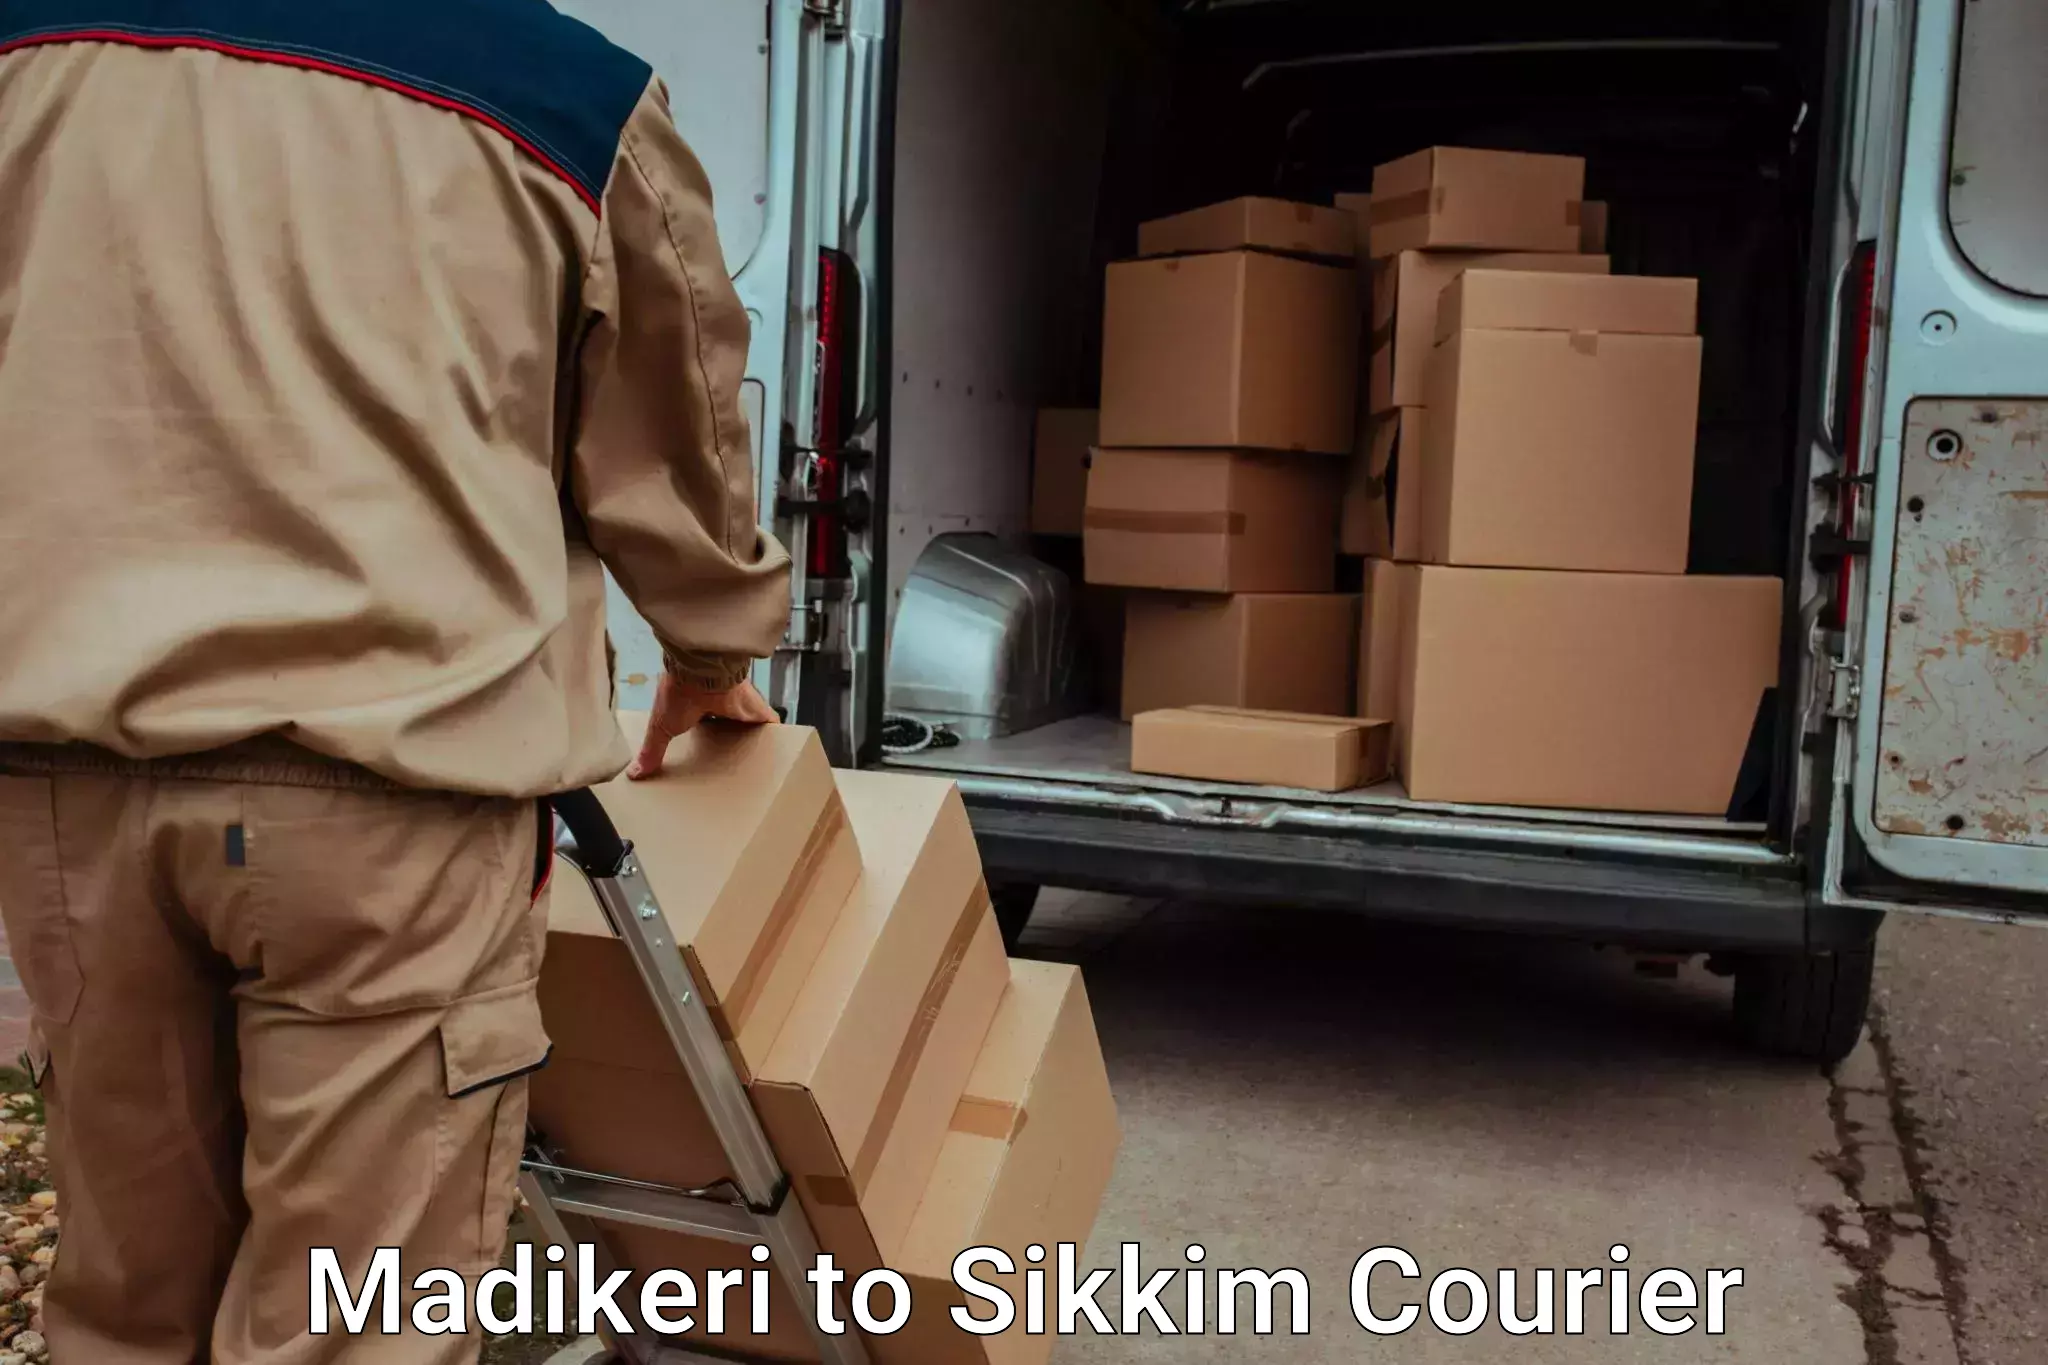 Door-to-door baggage service Madikeri to Pelling